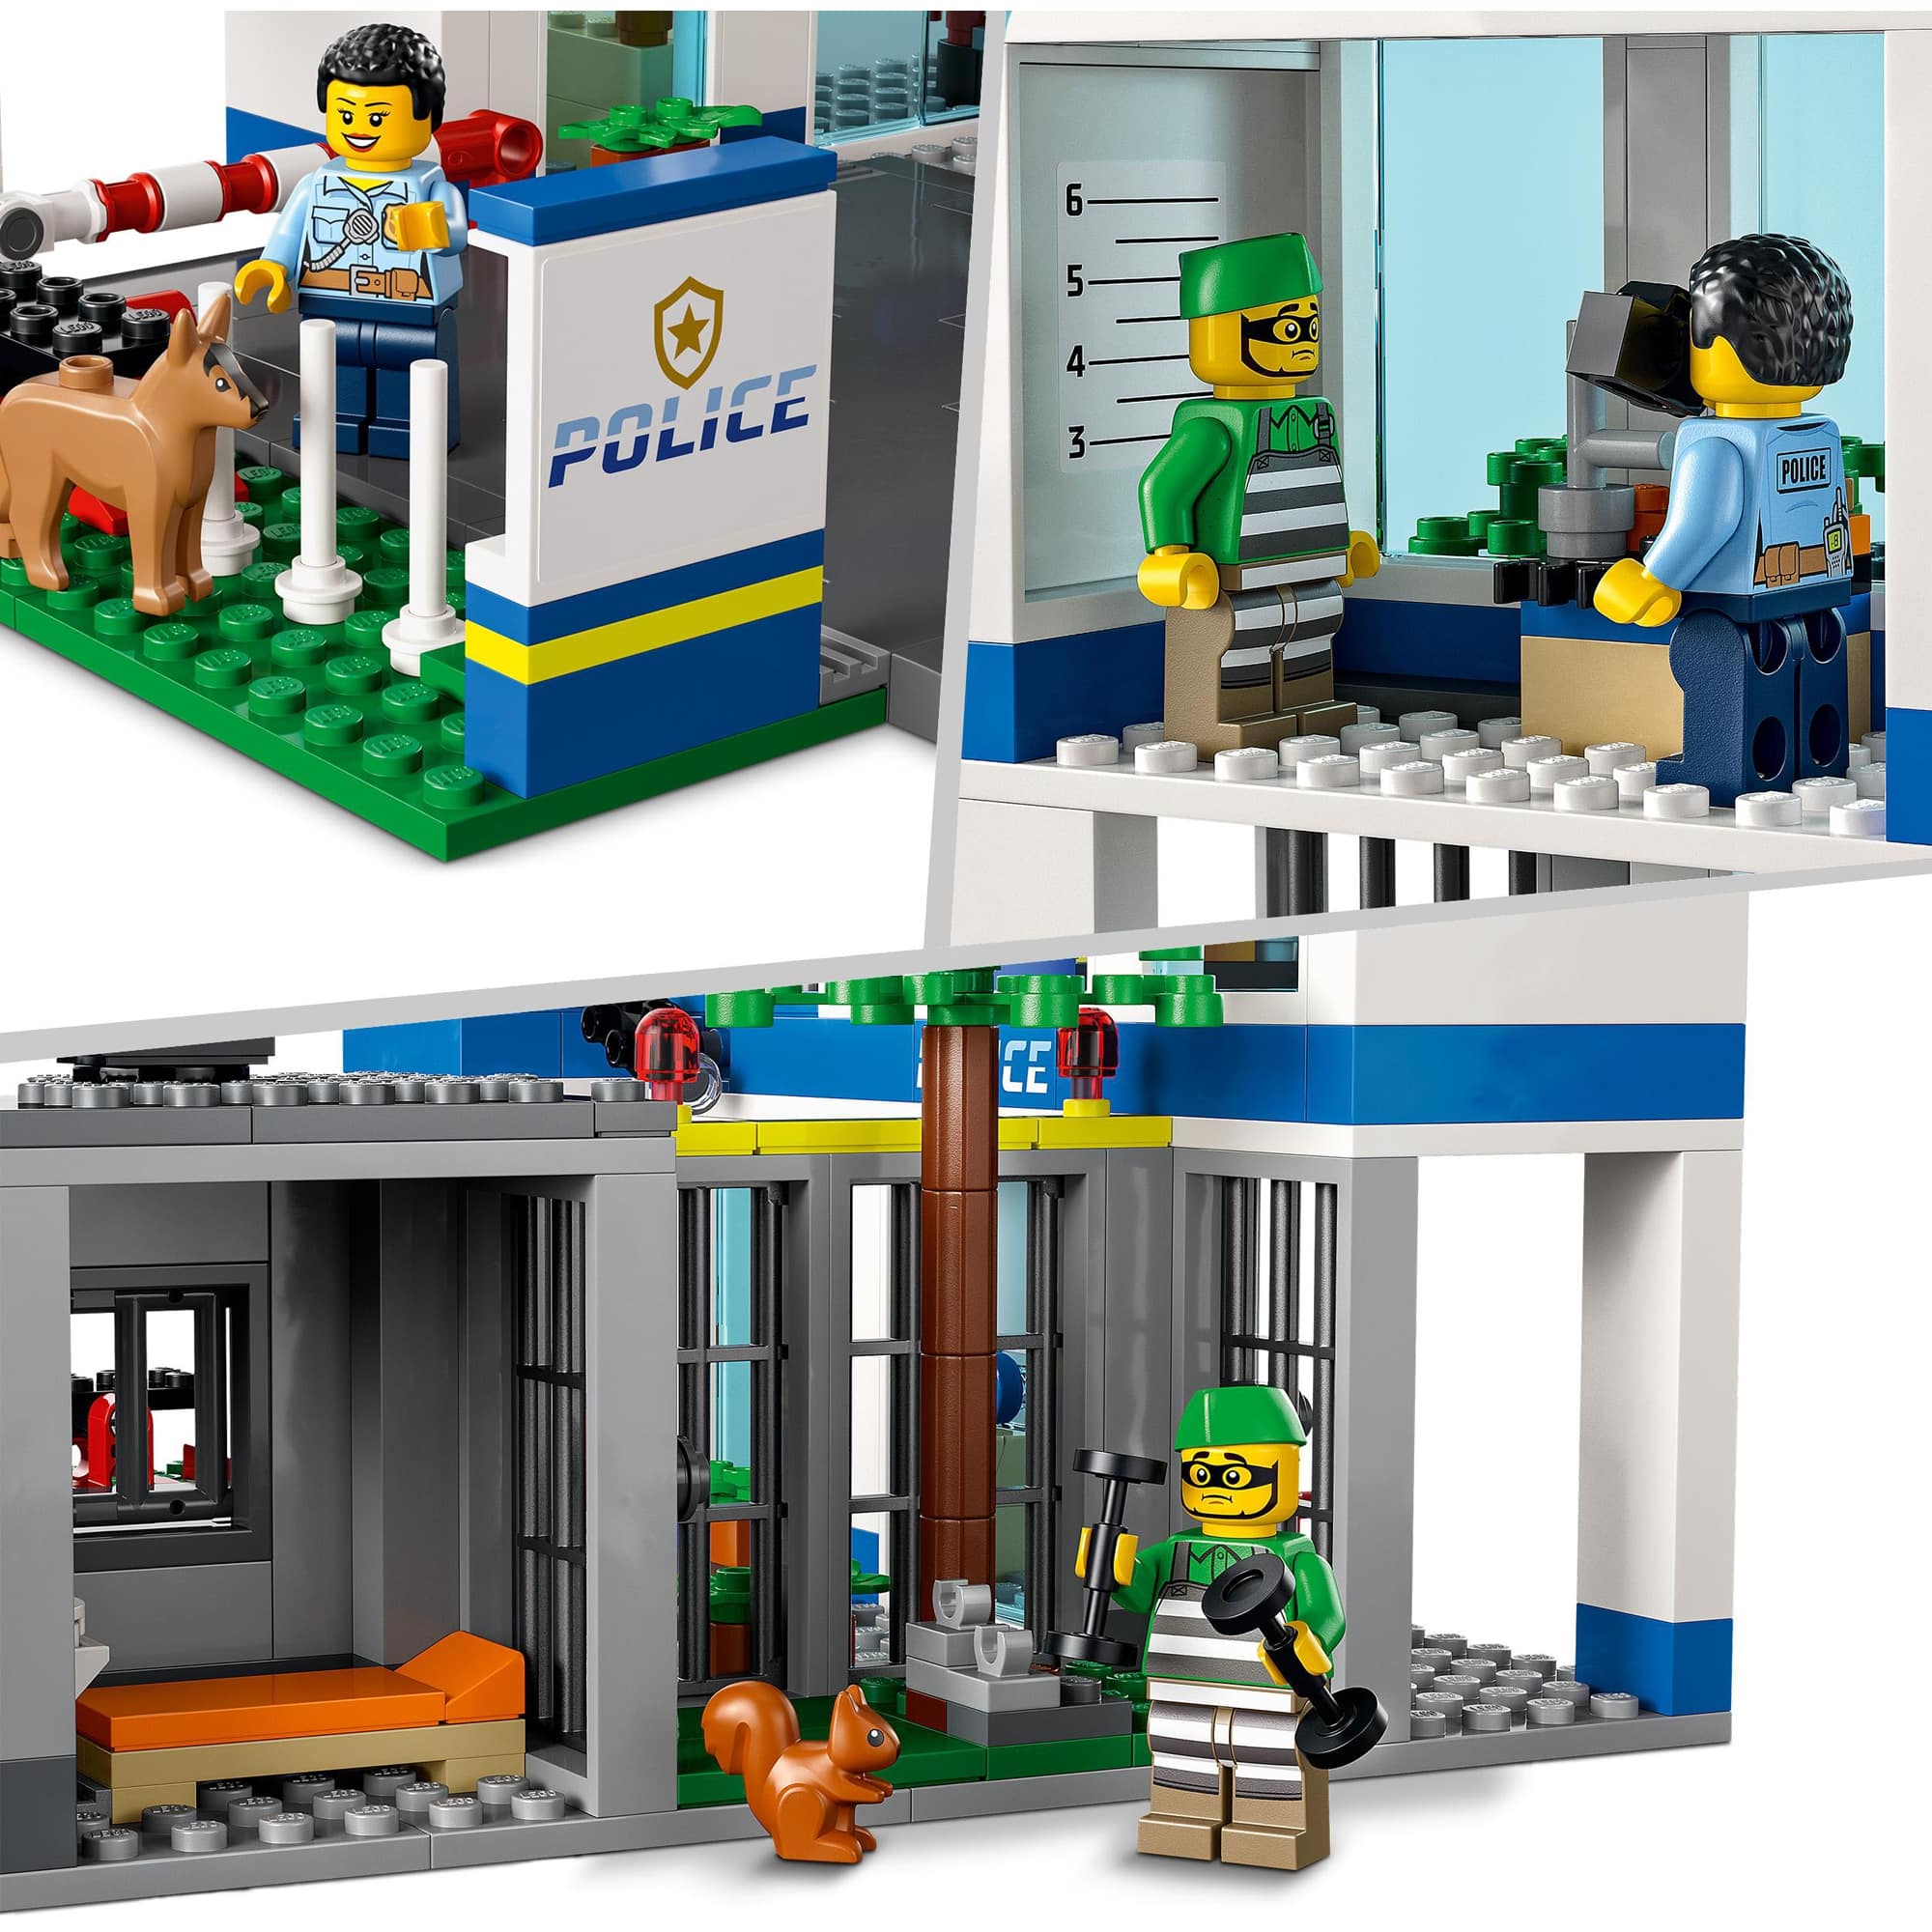 LEGO City   Polizeistation                            60316